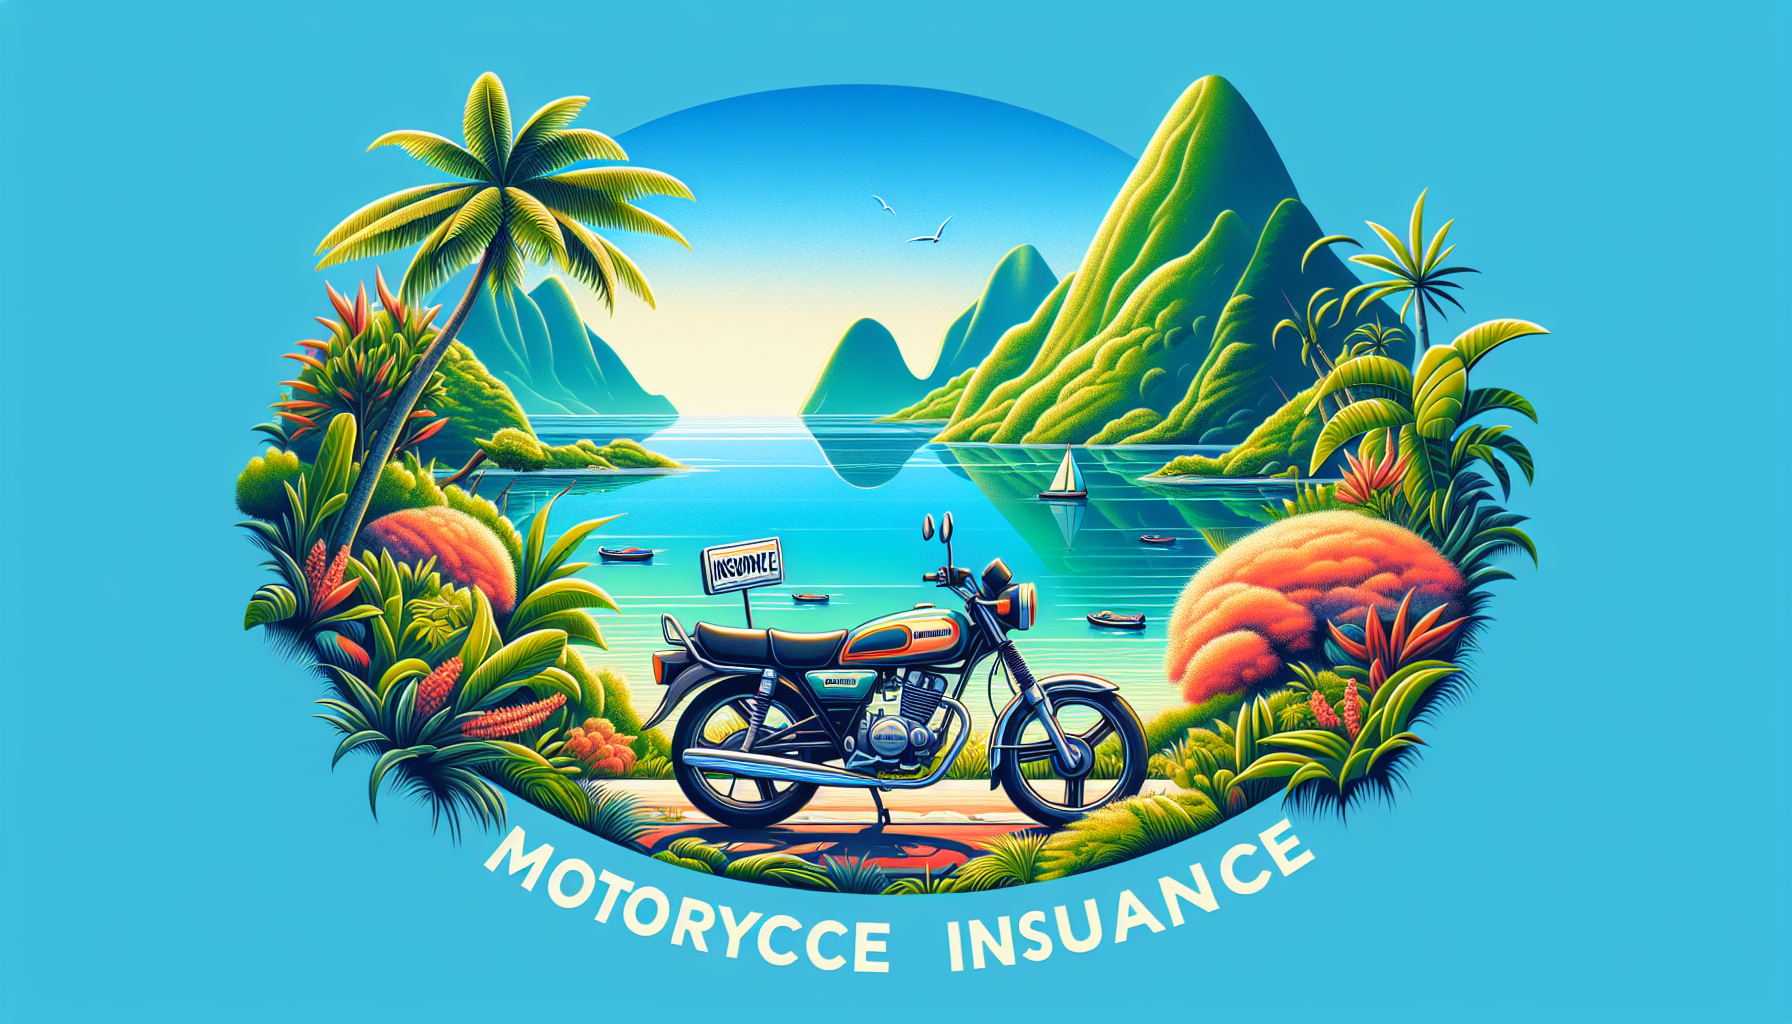 découvrez notre assurance moto adaptée à la réunion pour rouler en toute sécurité sur l'île. obtenez une protection maximale à des tarifs avantageux.